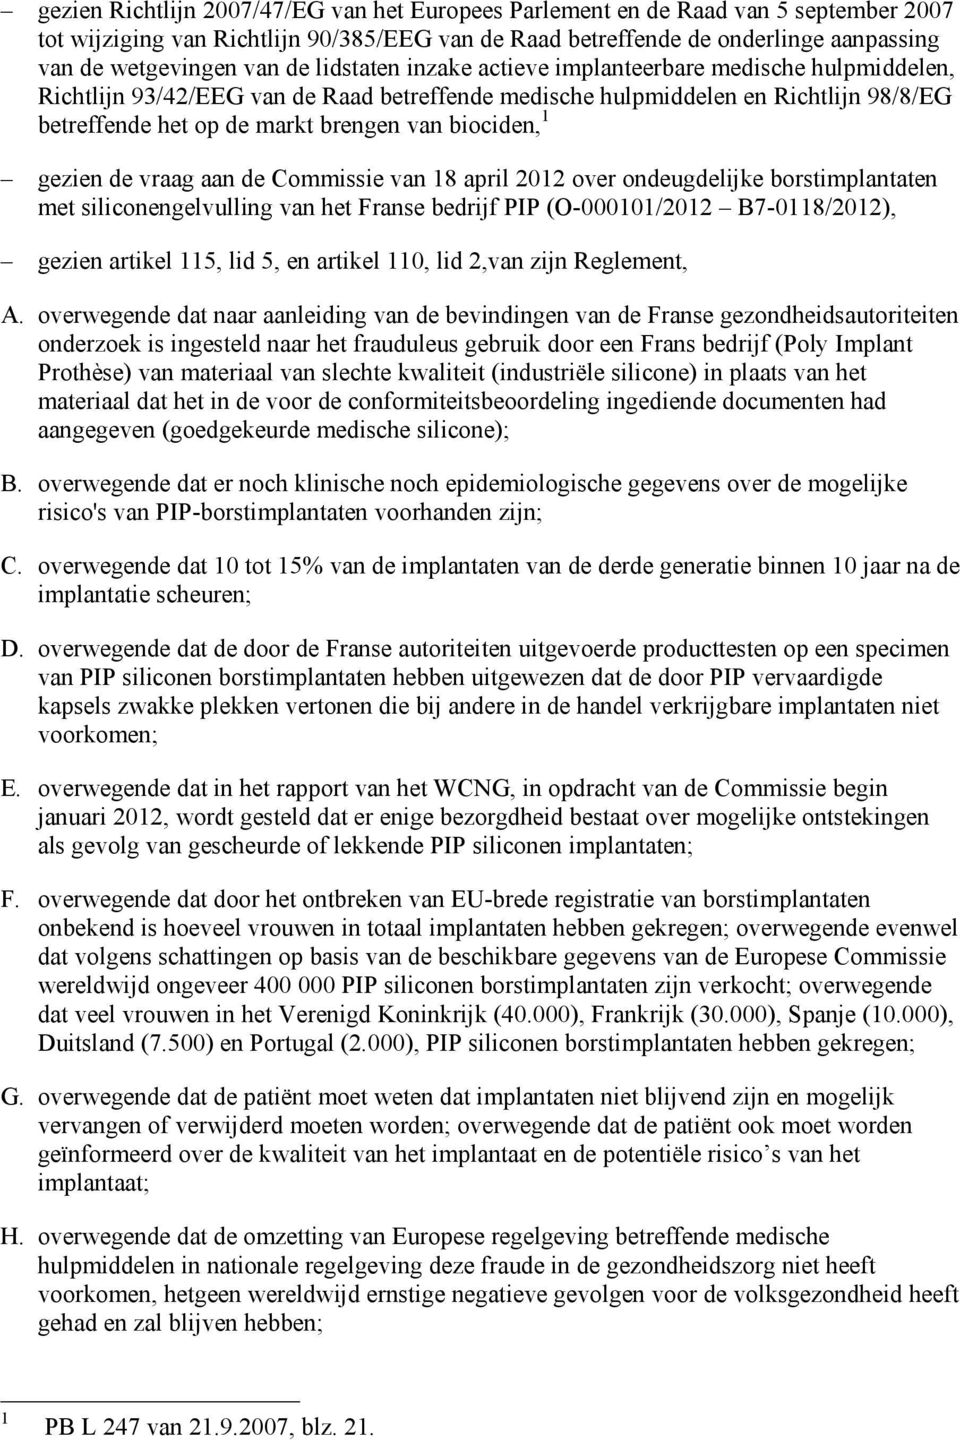 biociden, 1 gezien de vraag aan de Commissie van 18 april 2012 over ondeugdelijke borstimplantaten met siliconengelvulling van het Franse bedrijf PIP (O-000101/2012 B7-0118/2012), gezien artikel 115,